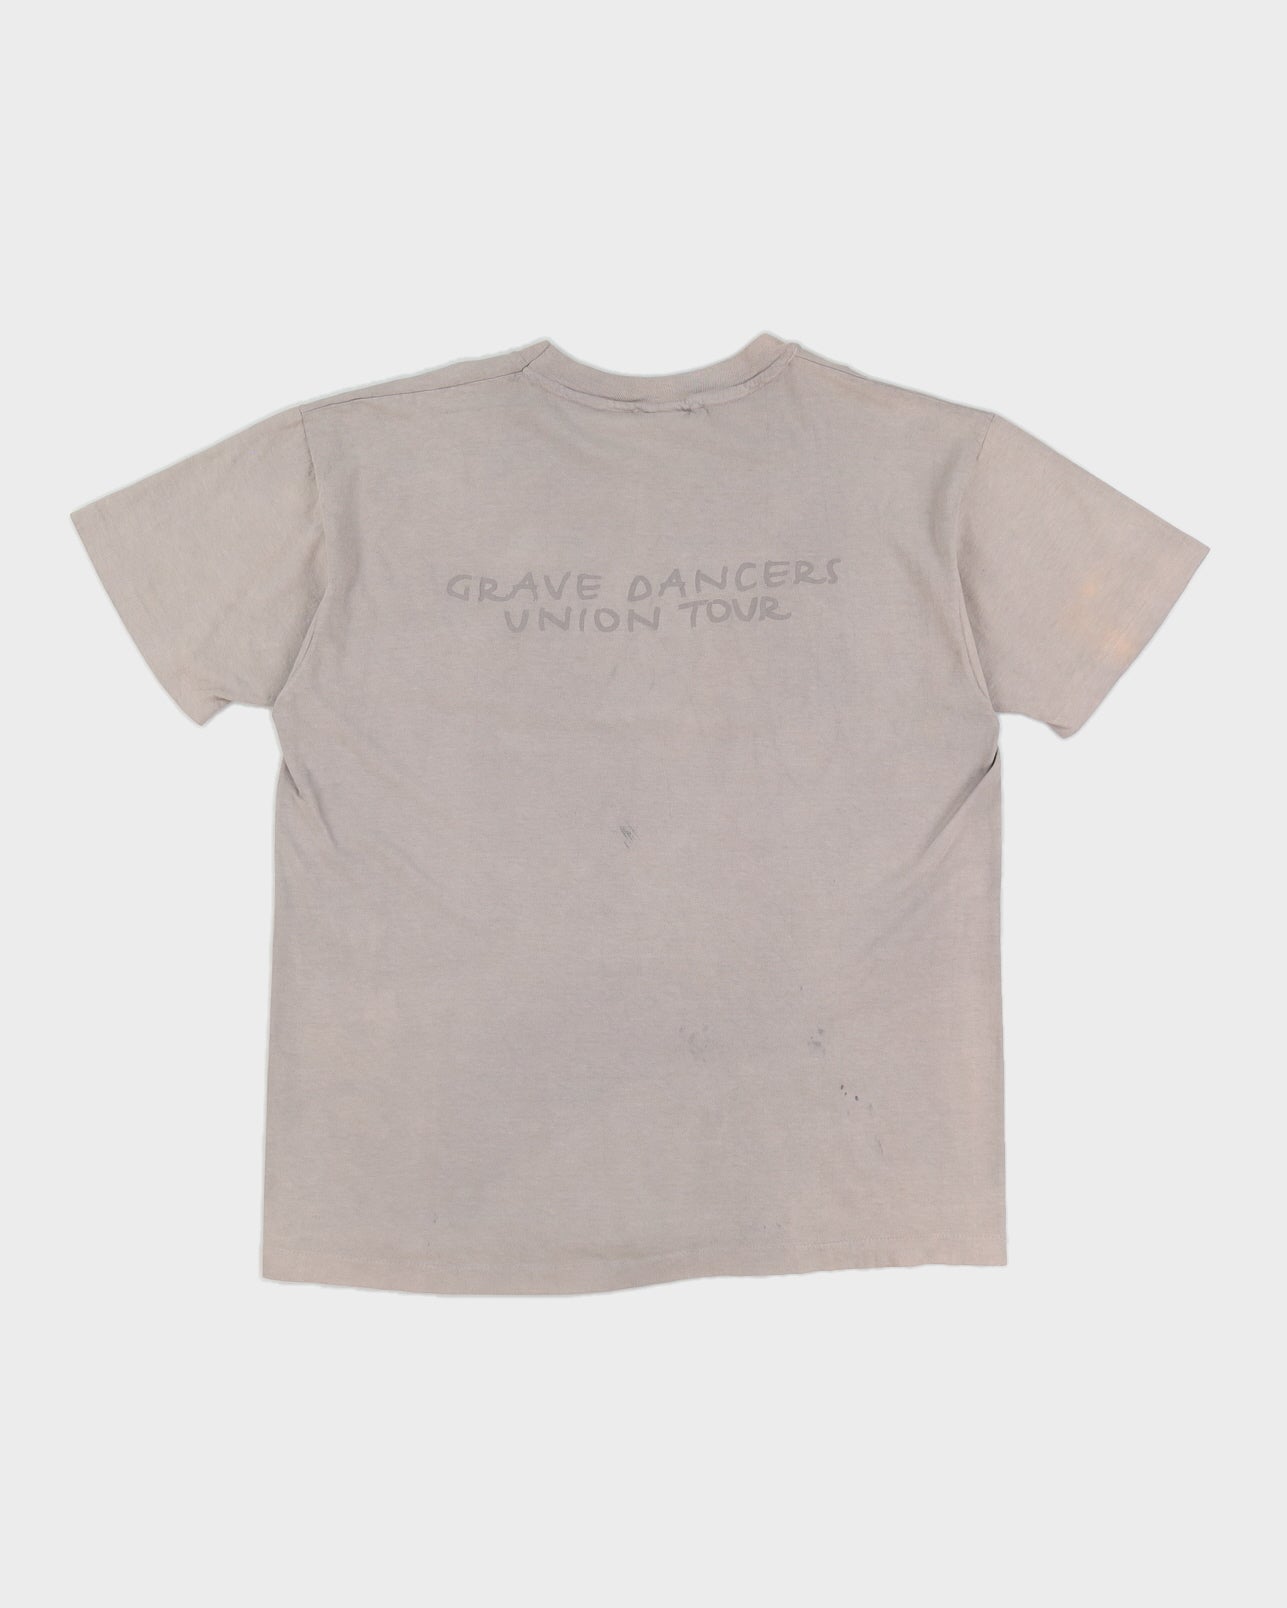 '92 Soul Asylum Grave Dancers Union Tour T-Shirt - XL